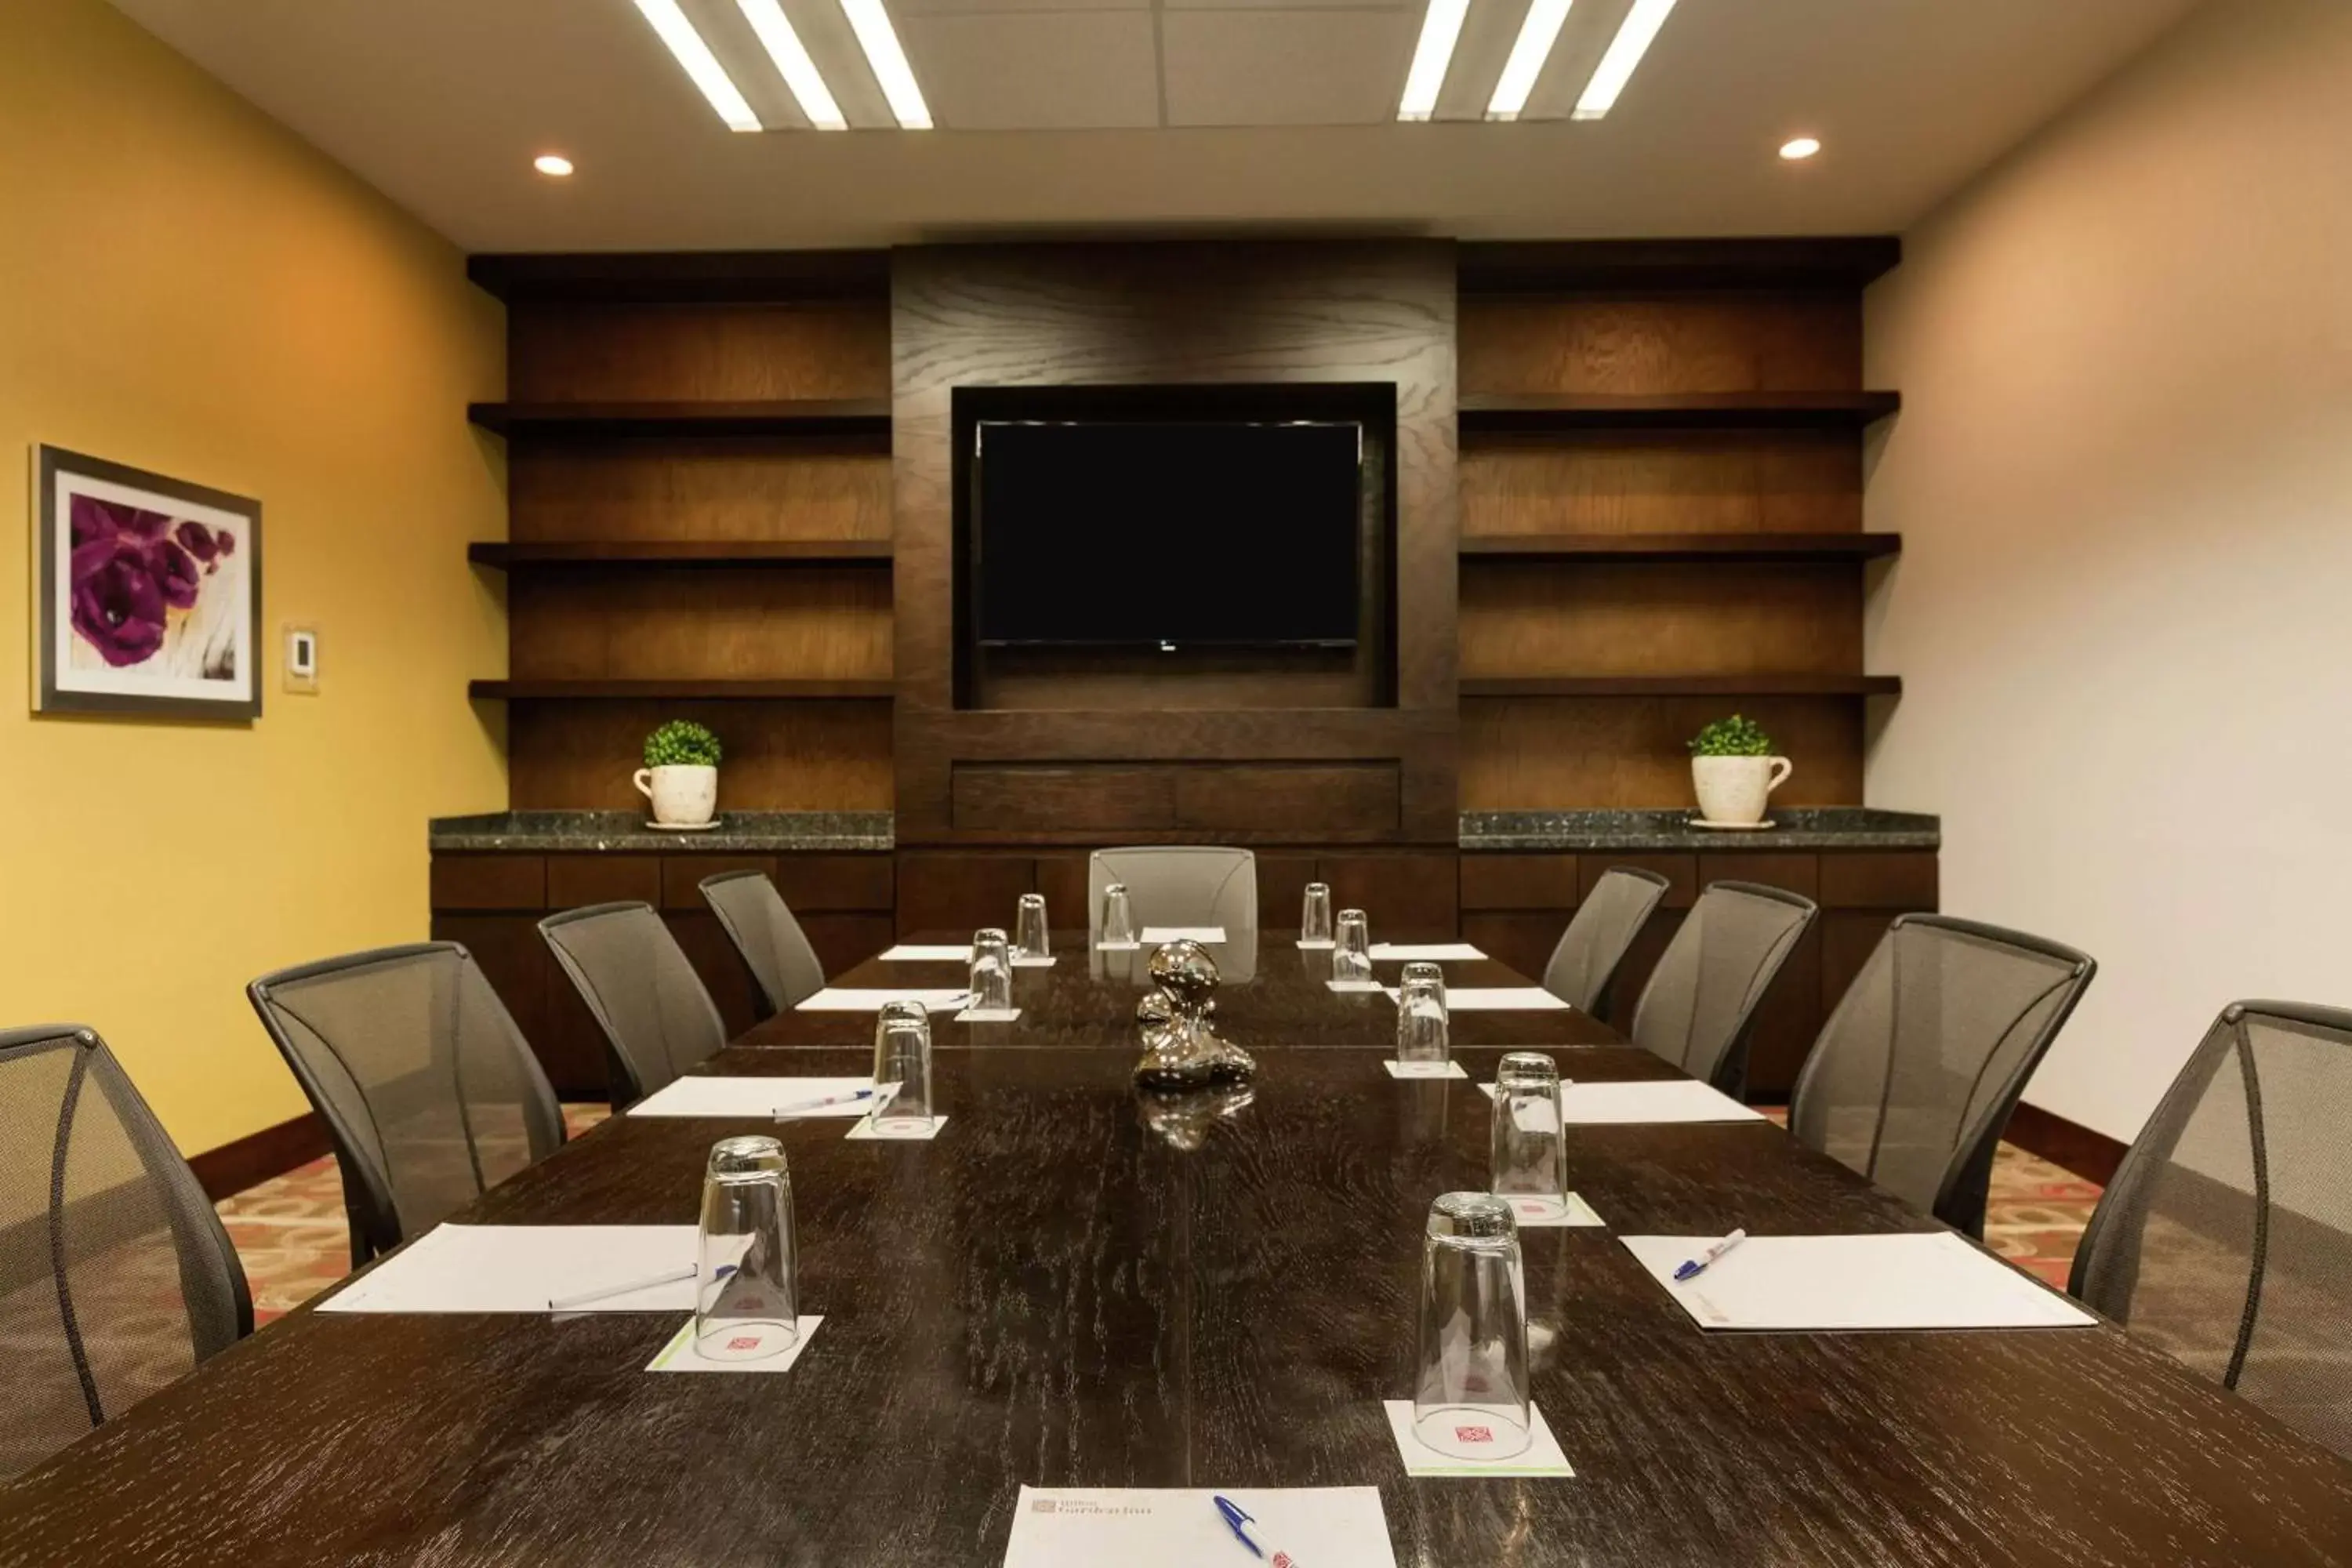 Meeting/conference room in Hilton Garden Inn Queretaro